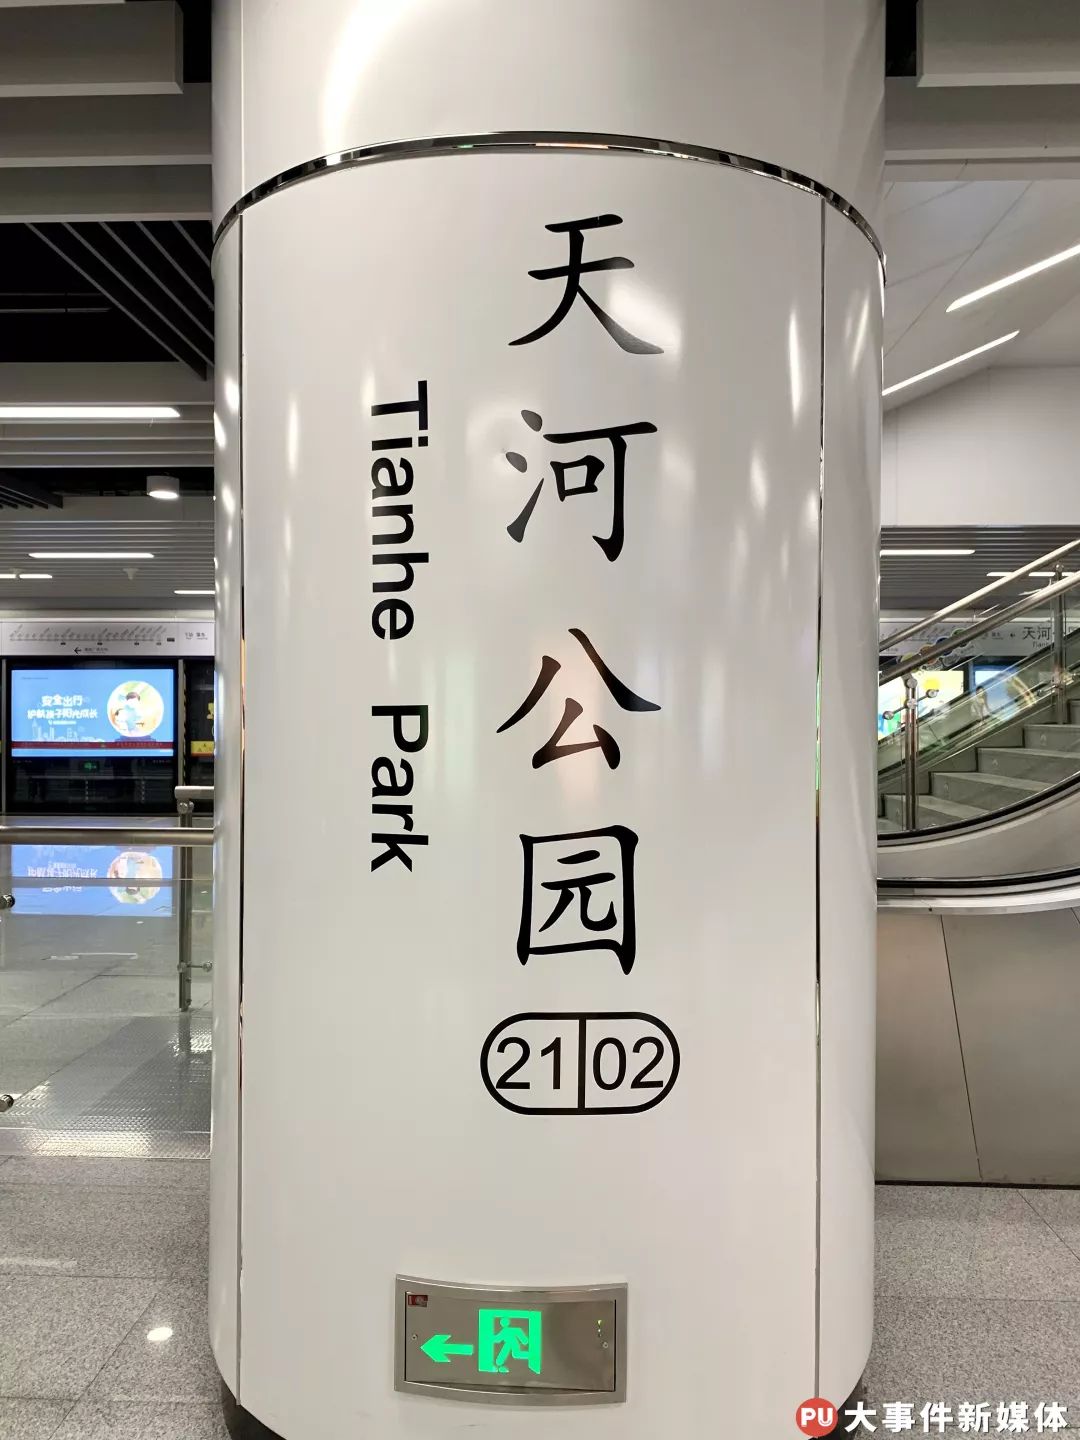 广州地铁天河公园站图片